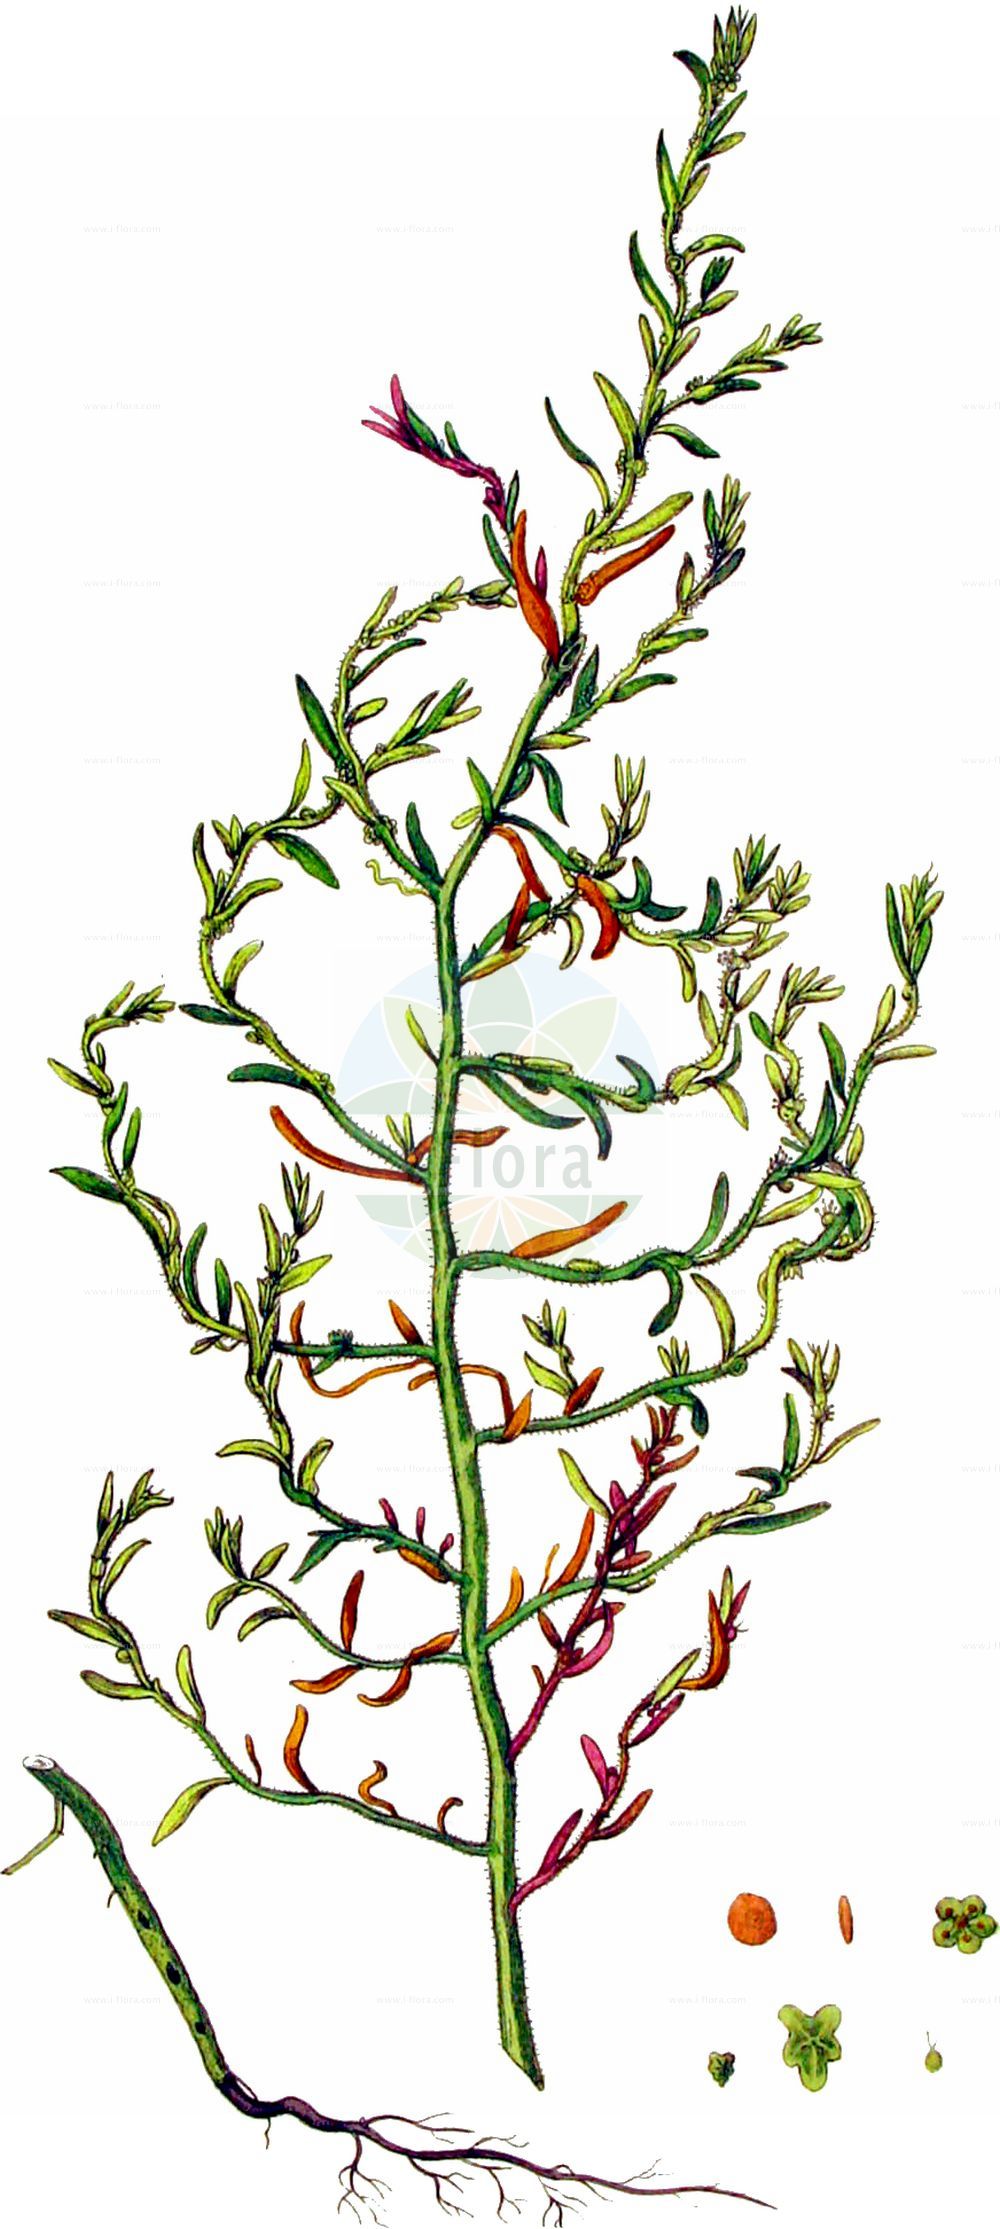 Historische Abbildung von Bassia hirsuta (Rauhaarige Dornmelde - Hairy Seablite). Das Bild zeigt Blatt, Bluete, Frucht und Same. ---- Historical Drawing of Bassia hirsuta (Rauhaarige Dornmelde - Hairy Seablite). The image is showing leaf, flower, fruit and seed.(Bassia hirsuta,Rauhaarige Dornmelde,Hairy Seablite,Bassia hirsuta,Chenopodium hirsutum,Echinopsilon hirsutum,Kochia hirsuta,Rauhaarige Dornmelde,Rauhhaarige Dornmelde,Hairy Seablite,Hairy Smotherweed,Bassia,Dornmelde,Smotherweed,Amaranthaceae,Fuchsschwanzgewächse,Pigweed family,Blatt,Bluete,Frucht,Same,leaf,flower,fruit,seed,Kops (1800-1934))